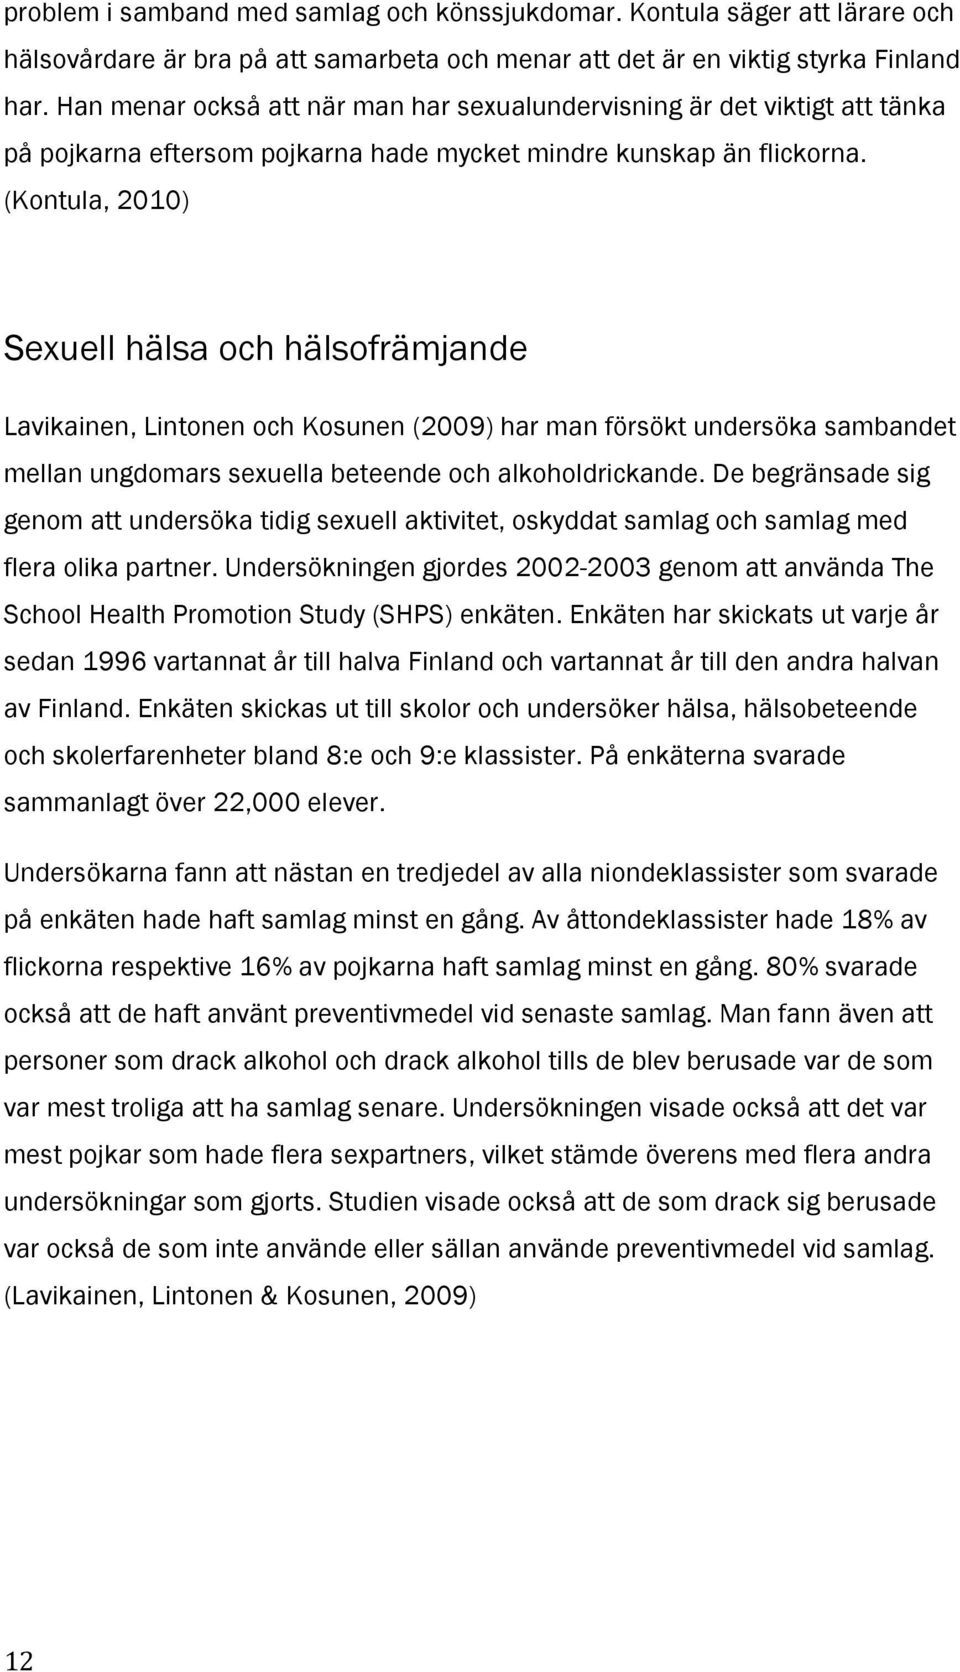 (Kontula, 2010) Sexuell hälsa och hälsofrämjande Lavikainen, Lintonen och Kosunen (2009) har man försökt undersöka sambandet mellan ungdomars sexuella beteende och alkoholdrickande.